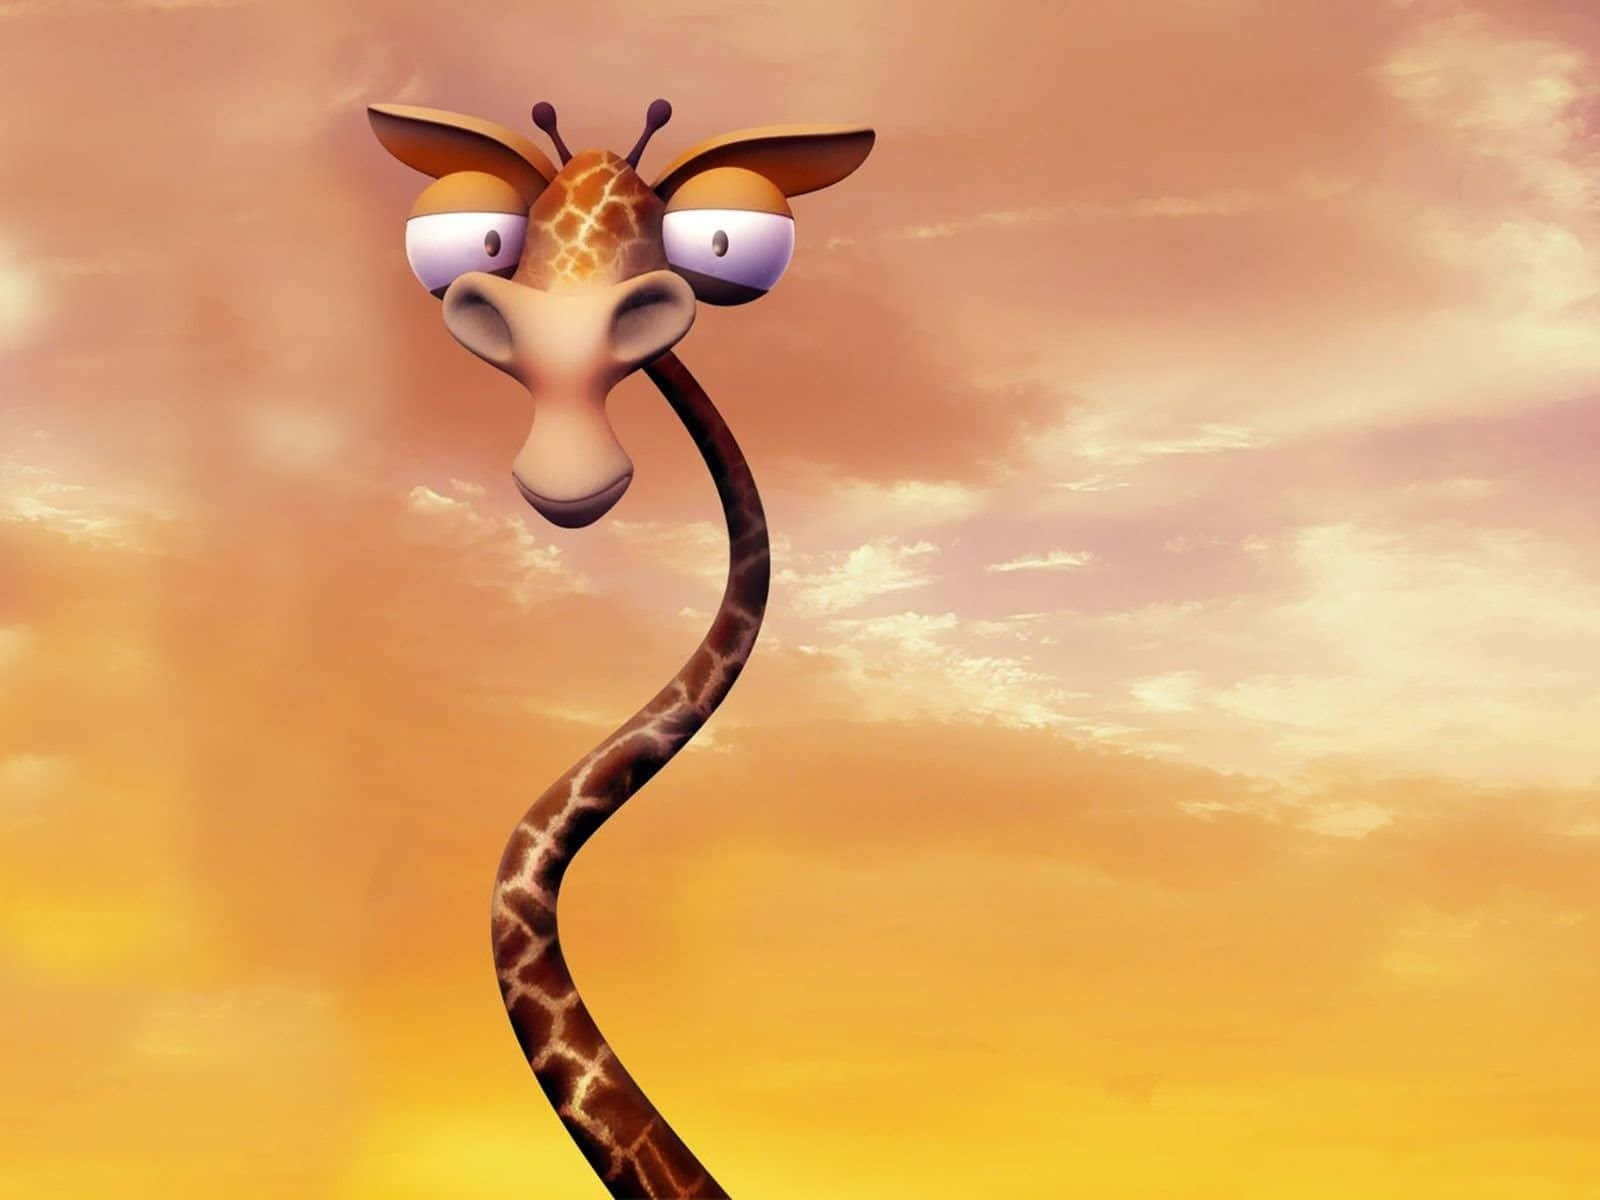 3dkonst Rolig Giraff Med Tunn Hals. Wallpaper